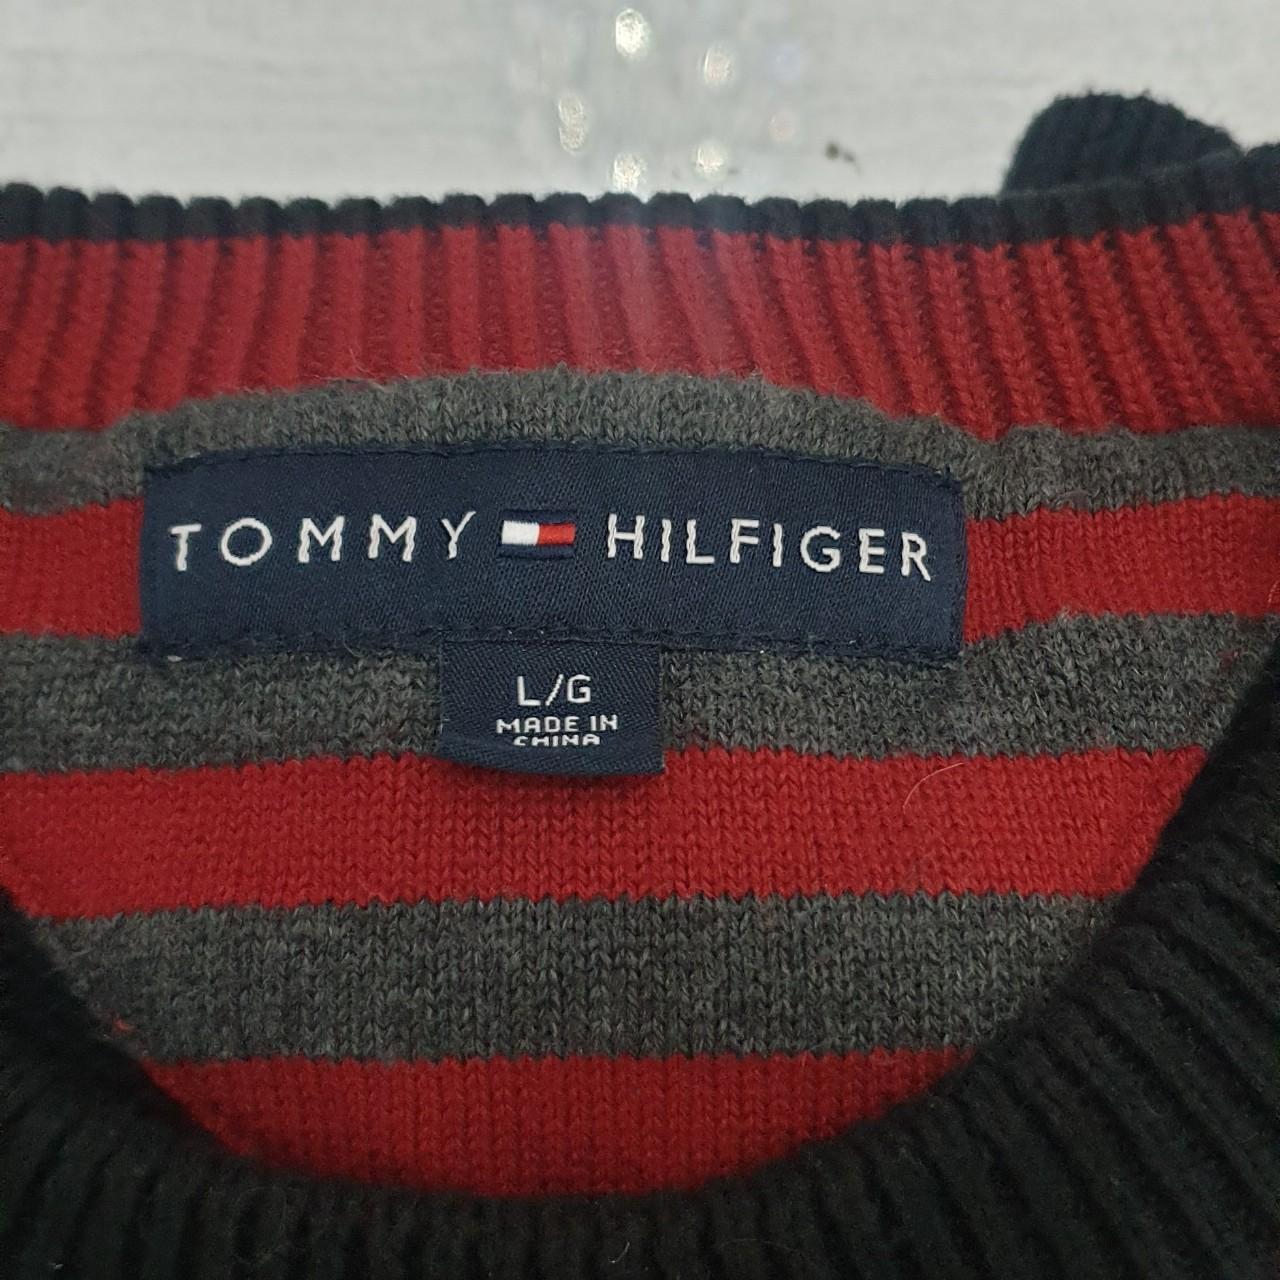 Tommy Hilfiger chunky knit jumper-Men's - Depop